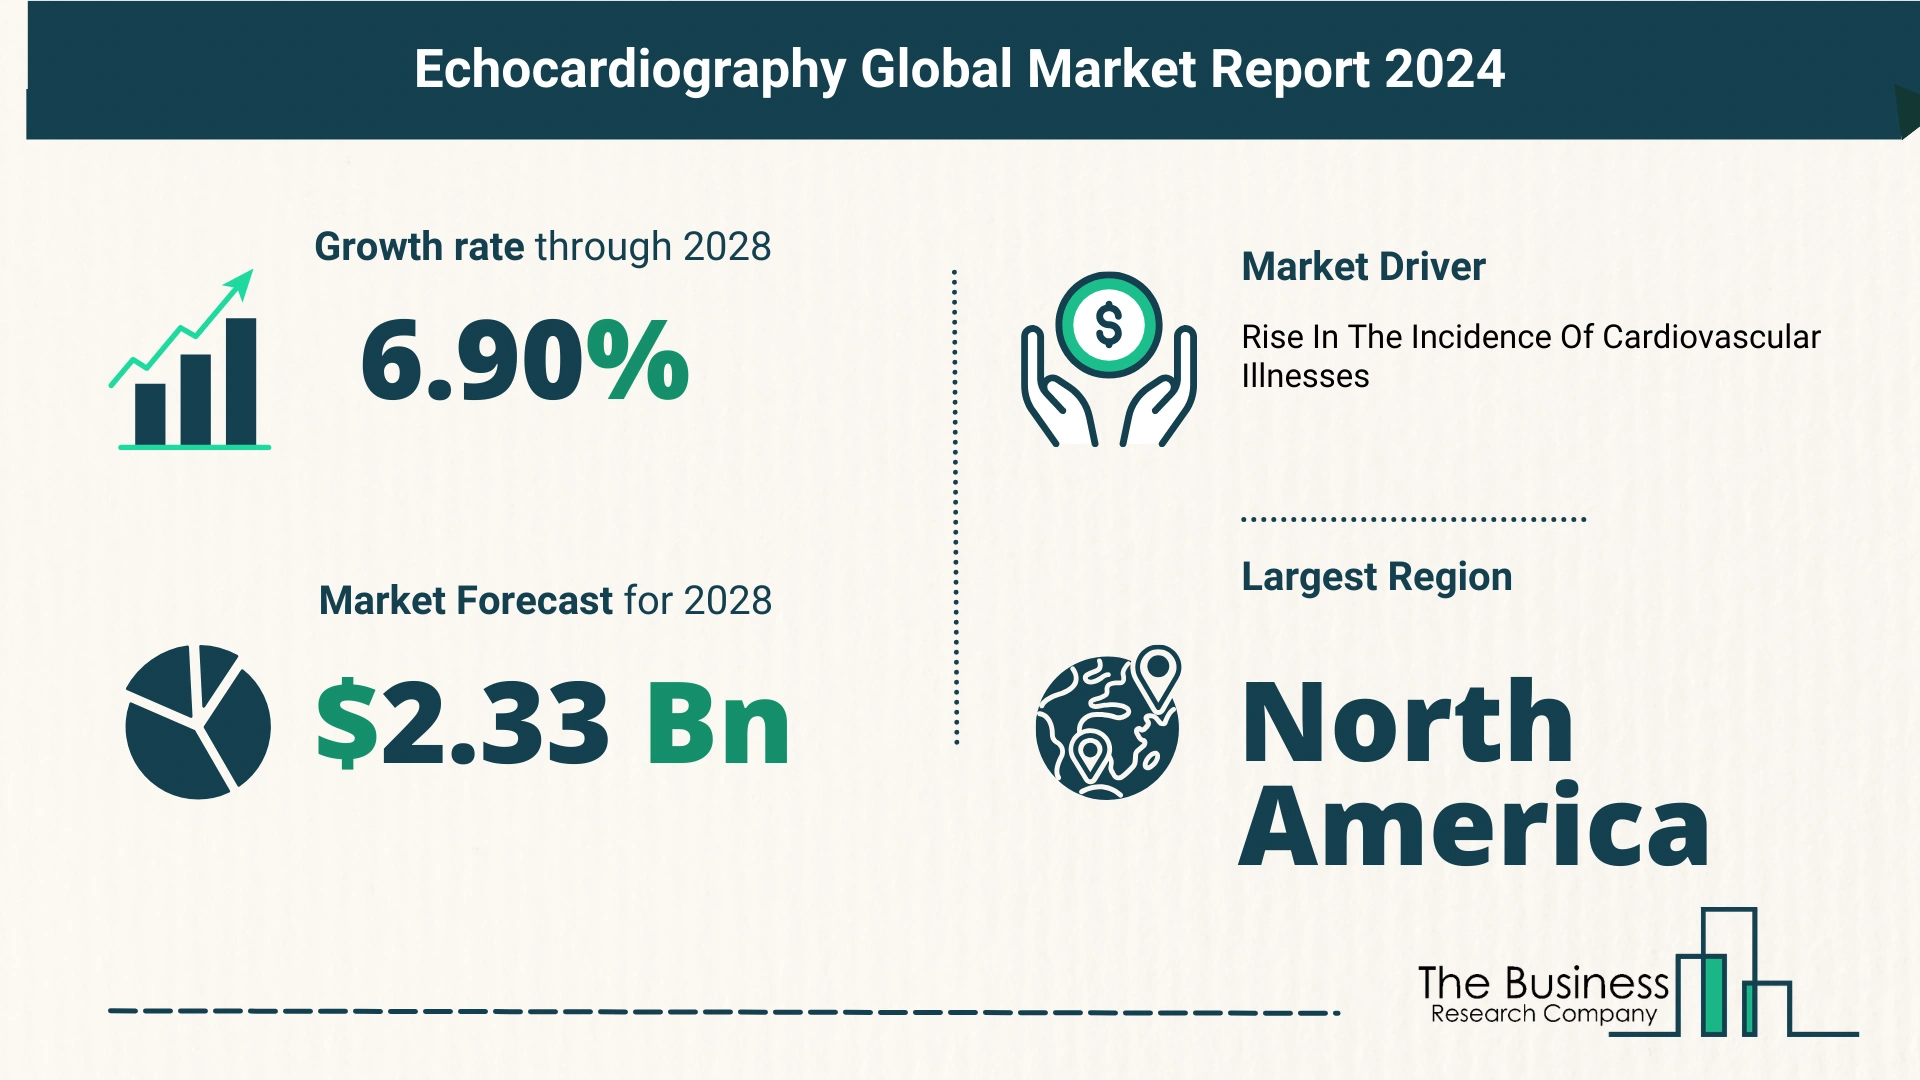 Global Echocardiography Market